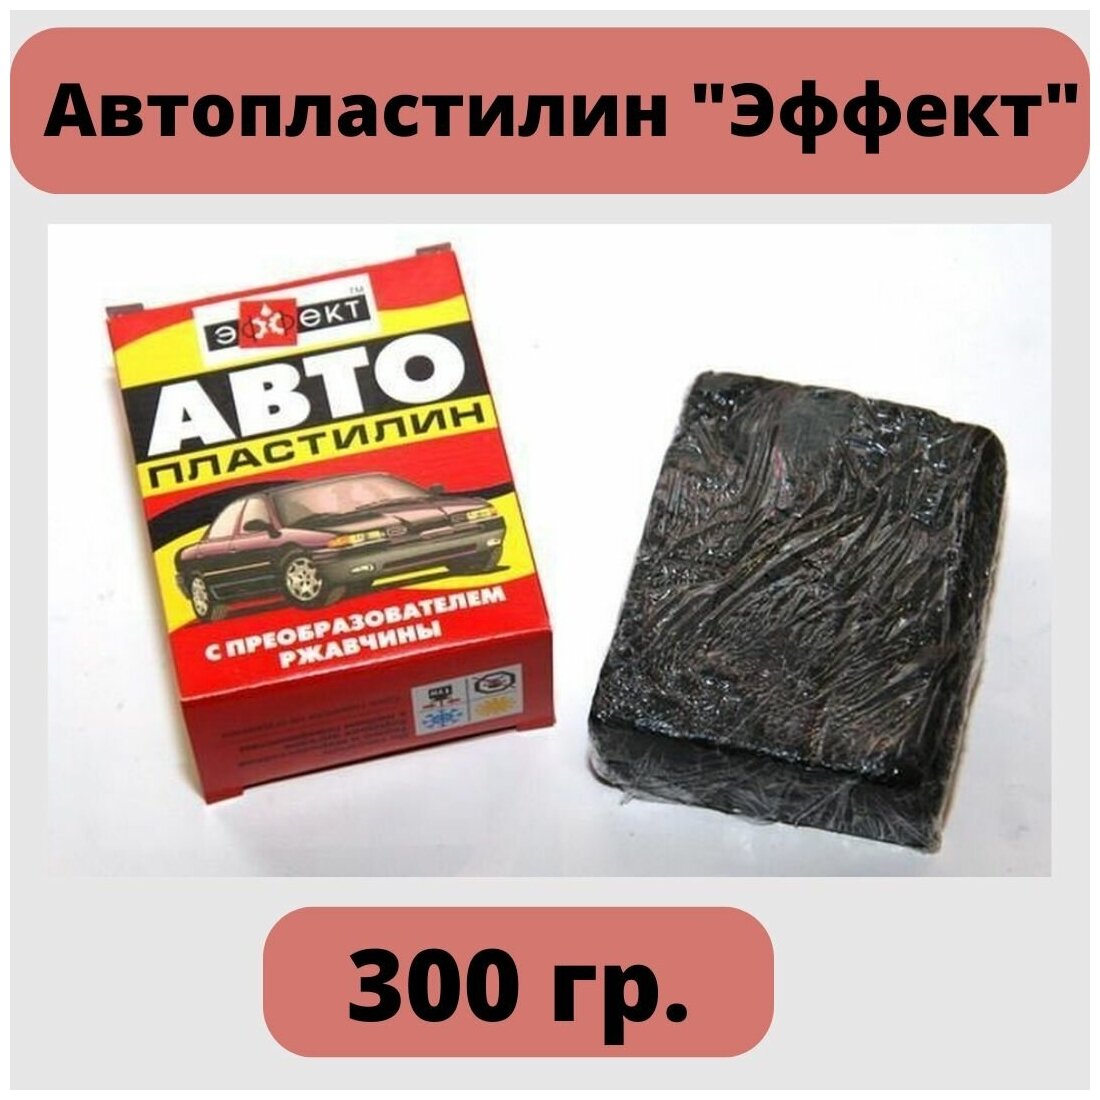 Автопластилин "Эффект" с преобразователем ржавчины 300 гр